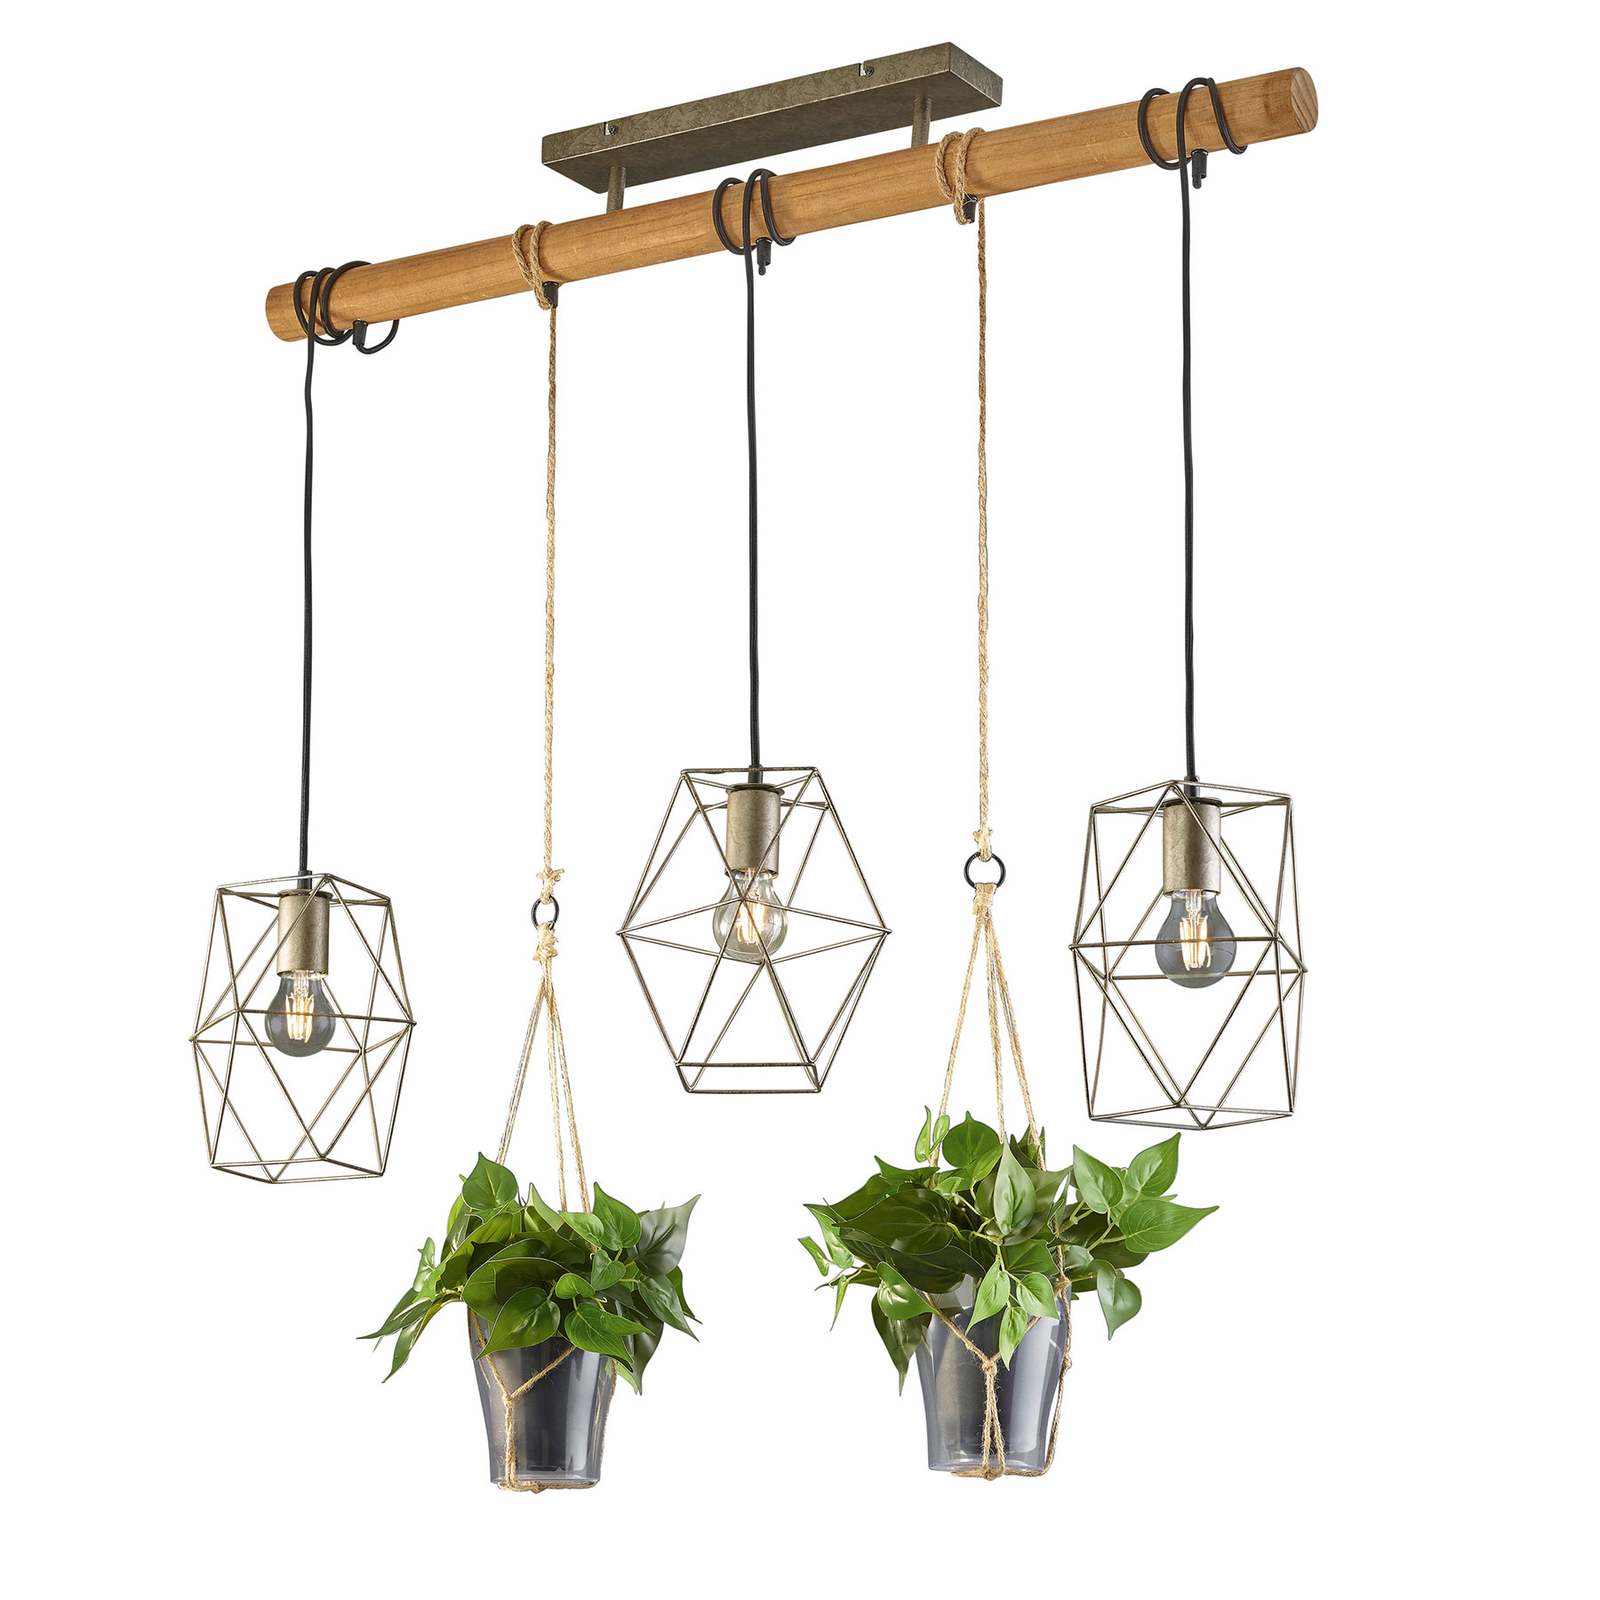 Oprichter reservoir residu Hanglamp Plant, 3-lamps met glas voor decoratie | Lampen24.nl